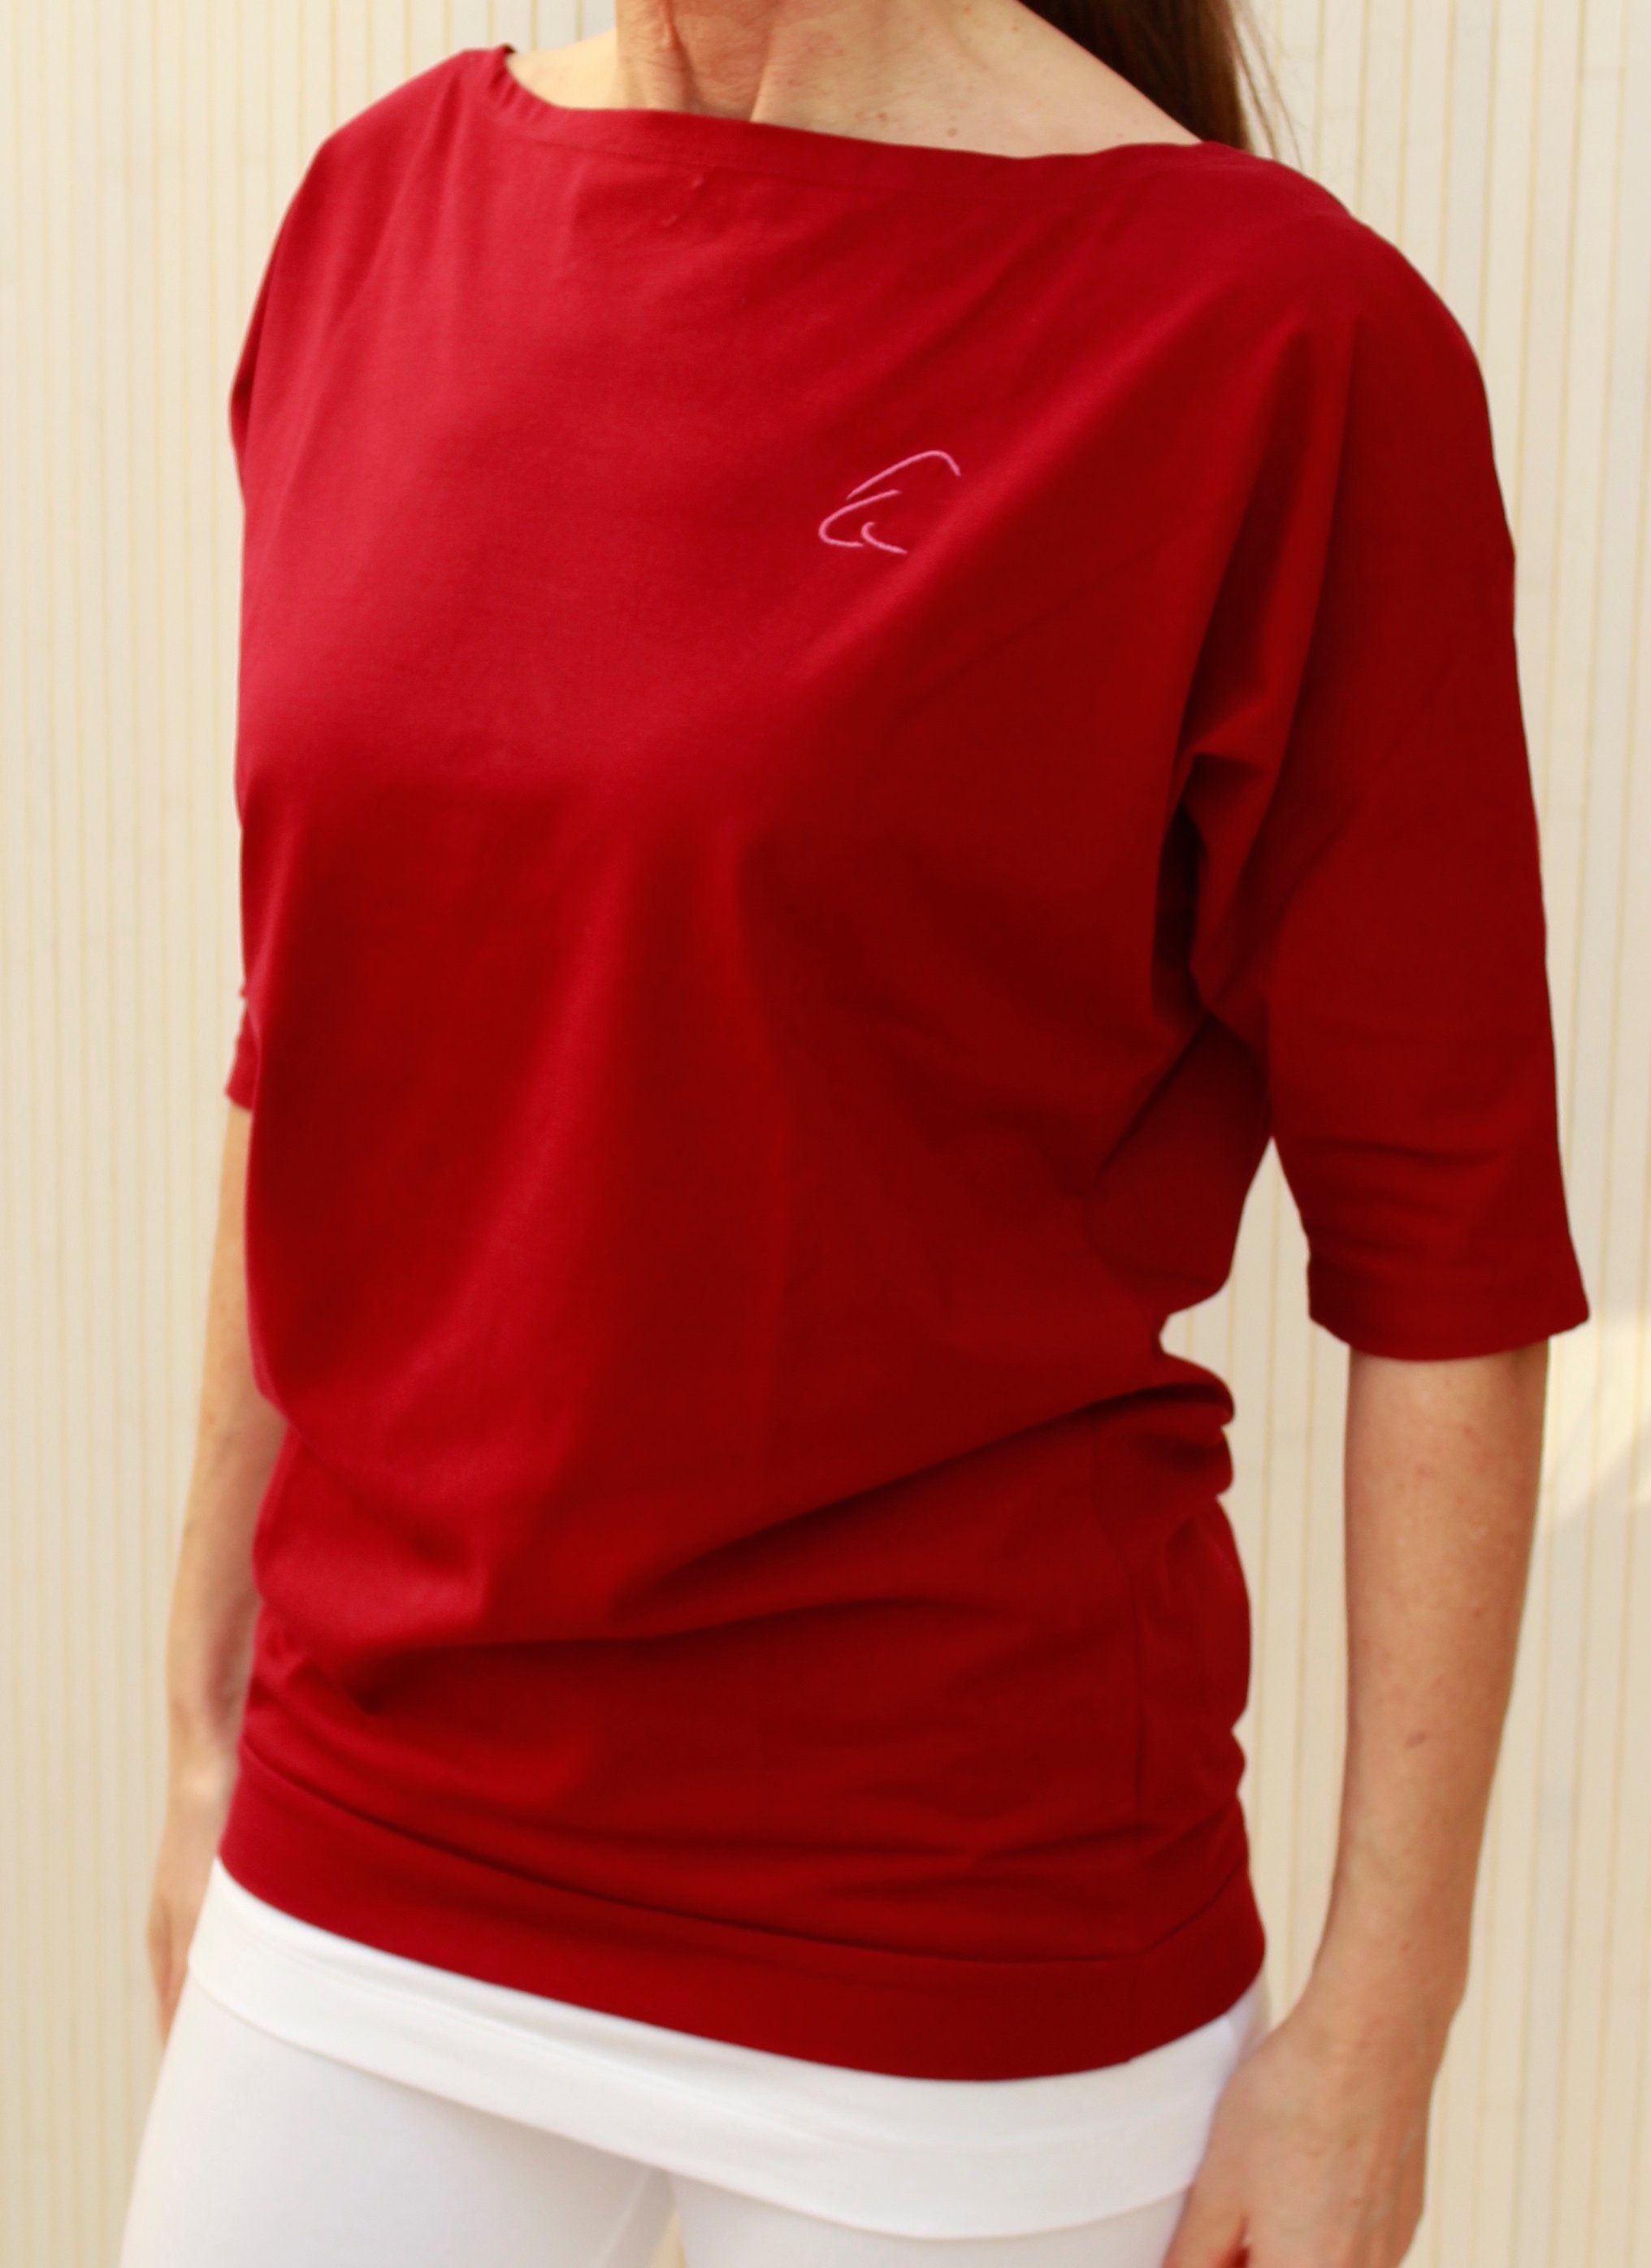 Sadaa in ESPARTO Schulterausschnitt Granatrot breitem mit Wohlfühlshirt Bio-Baumwolle (U-Boot-Ausschnitt) Yogashirt Halbarmshirt